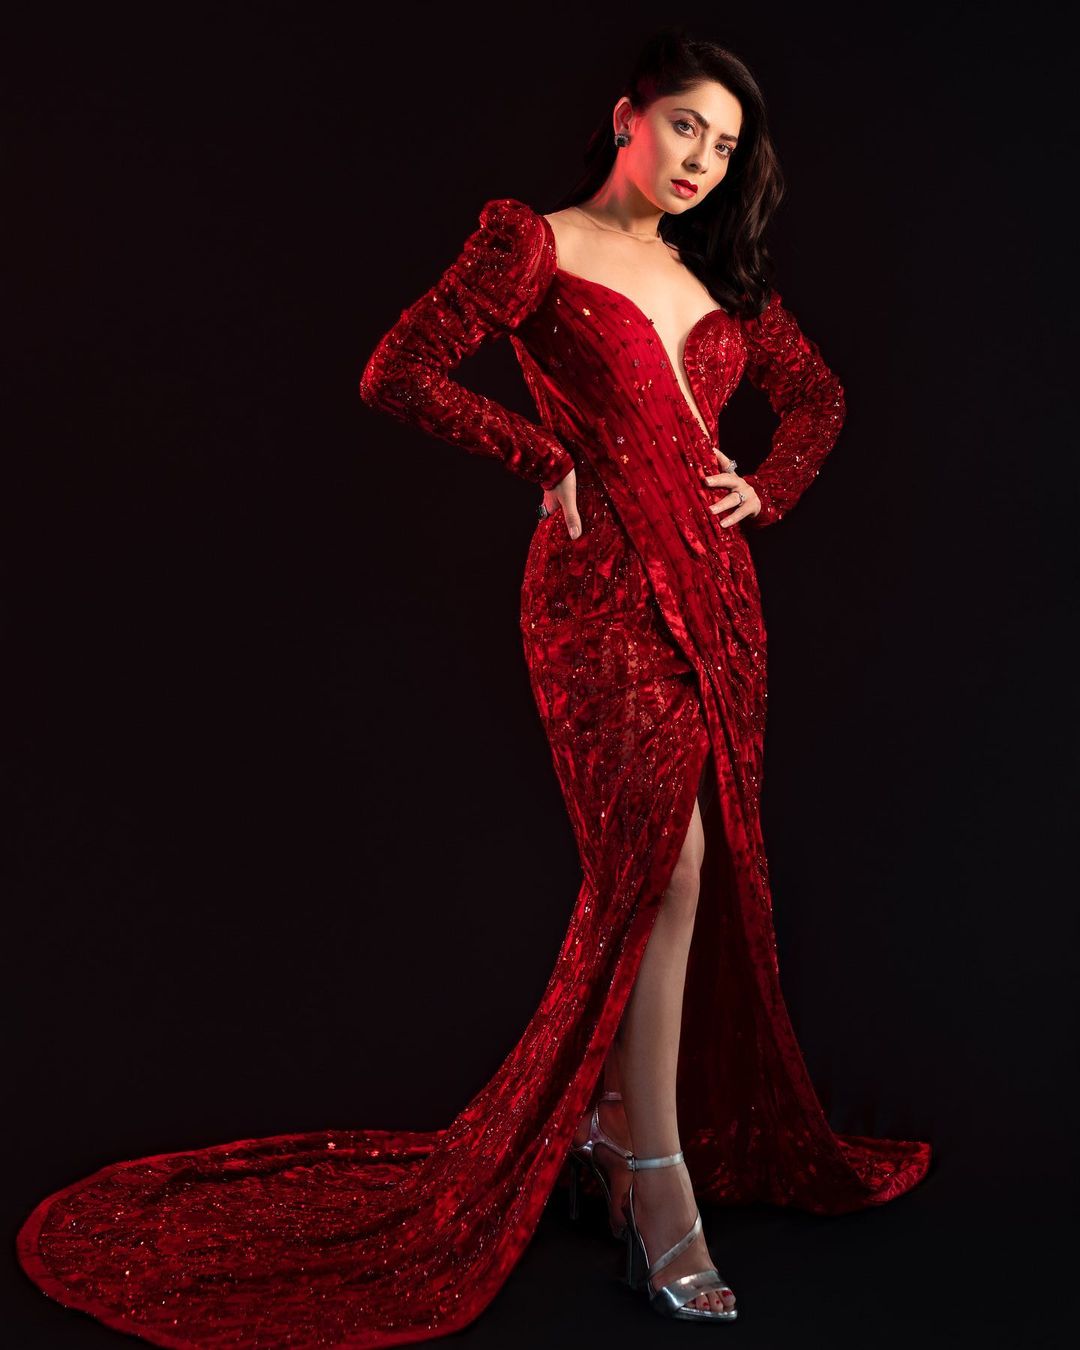 'फिल्म फेअर'च्या रेड कार्पेटवर अप्सरा शिमरी ड्रेसमध्ये अवतरलेली दिसली.